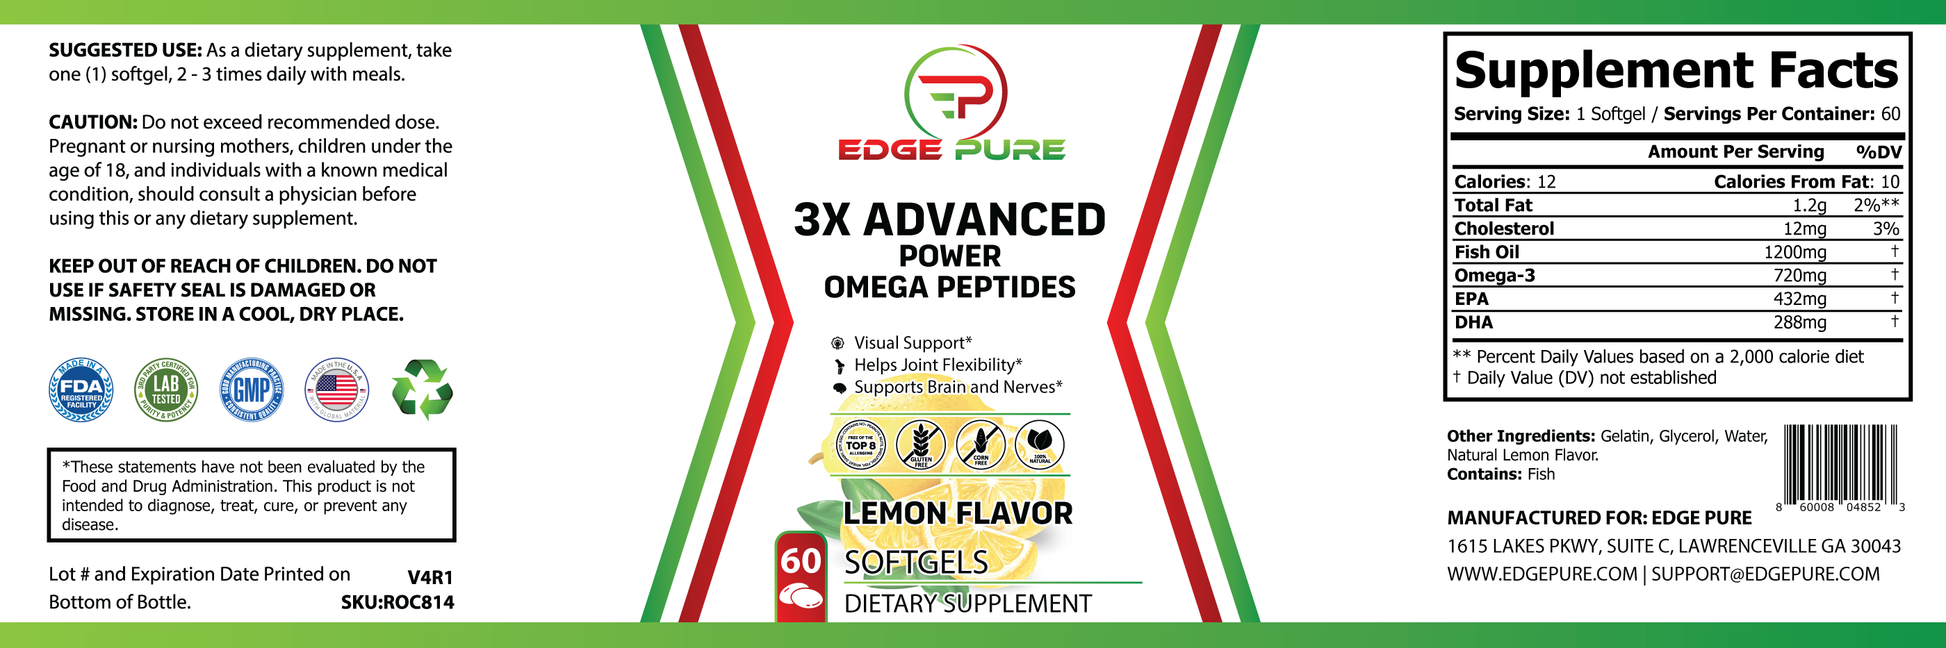 3X Advanced Power Omega Peptides Edge Pure